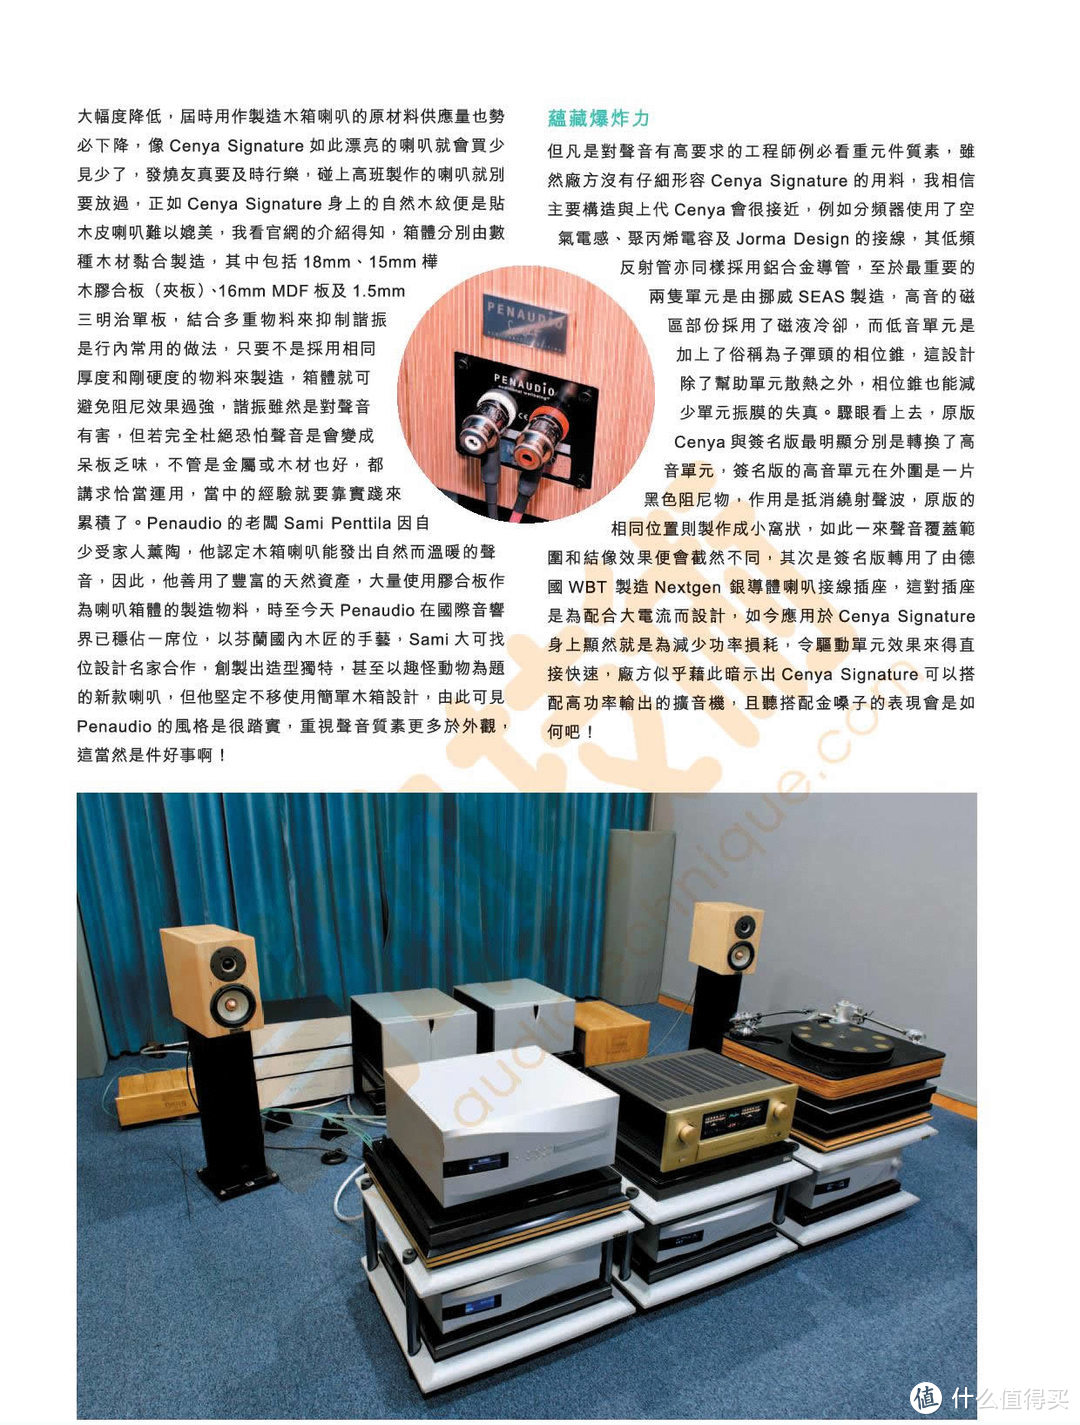 香港《音响技术》评测PENAUDIO Cenya签名版书架箱：自然渗出魅力